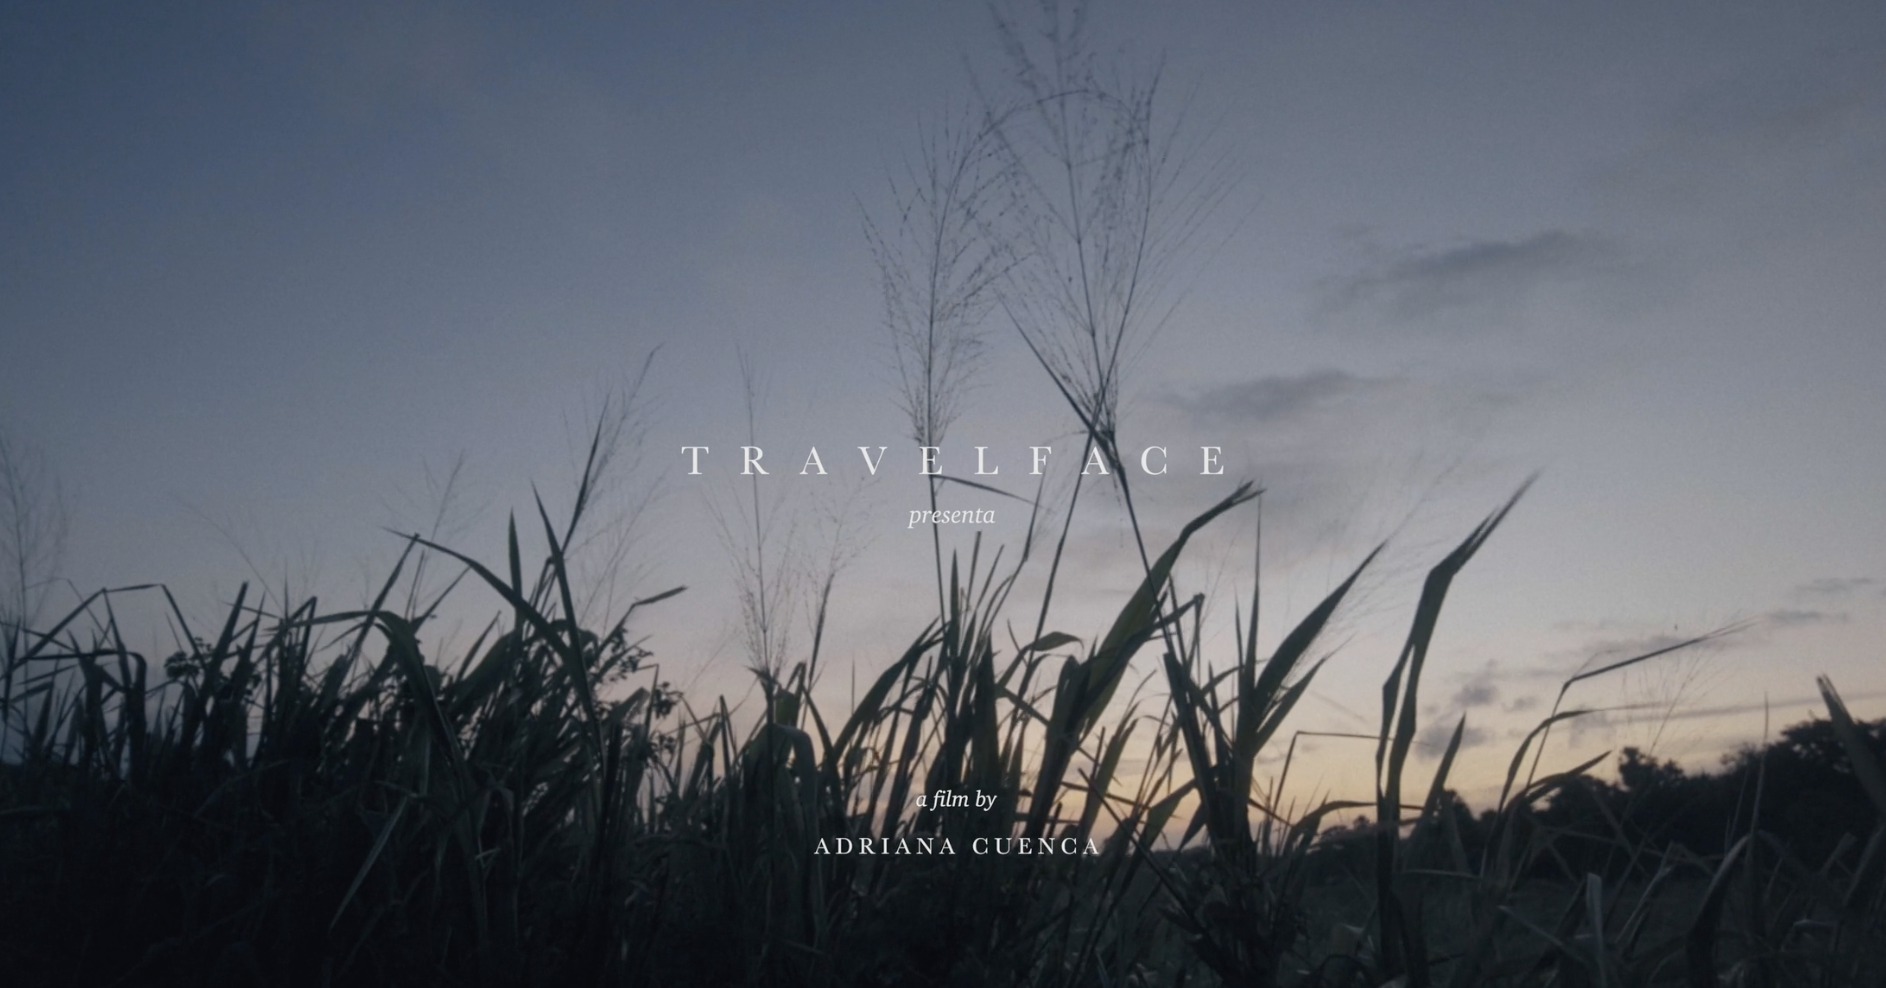 Travelface Experience Film: “La leyenda del tiempo”